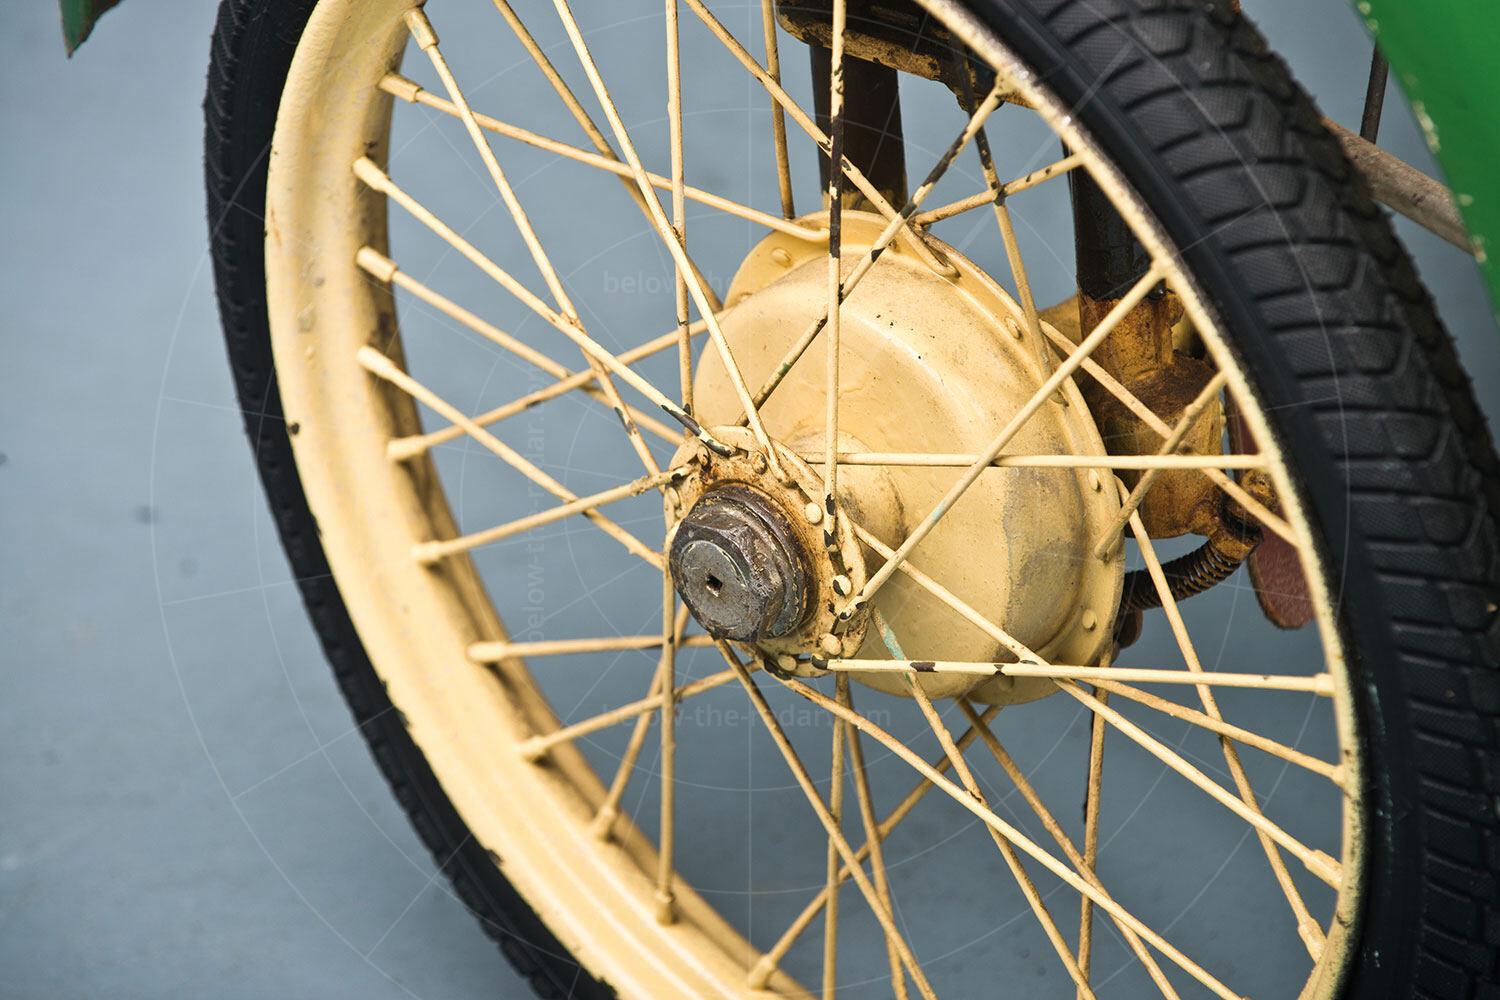 Cuno Bistram wire wheel Pic: RM Sotheby's | Cuno Bistram wire wheel